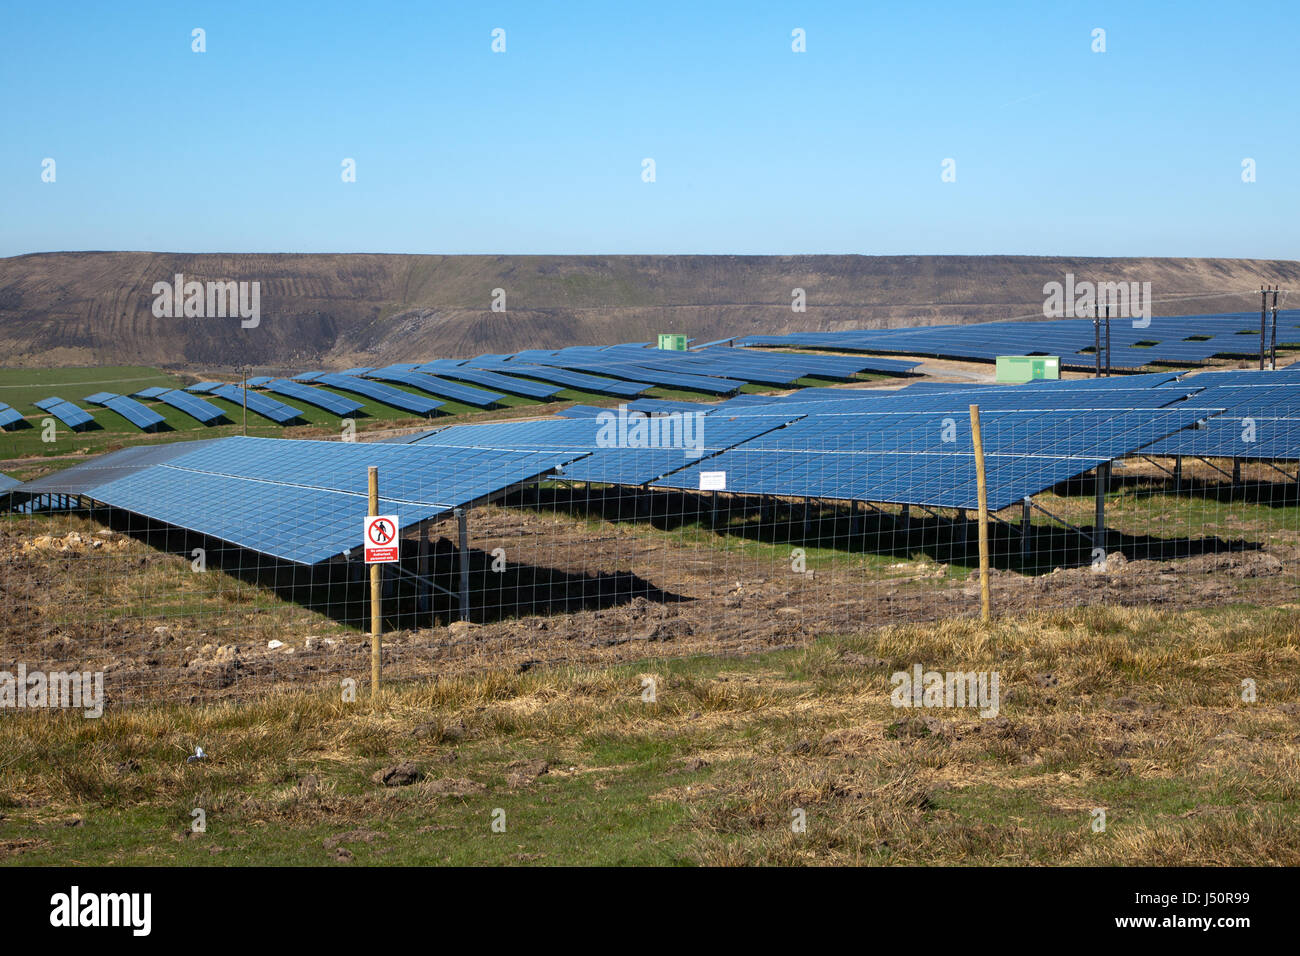 SolarPark neben Tagebau Kohle abbauen mit sauberen Ökostrom von Solarstrom im Gegensatz zu destruktiven Tagebau Kohleförderung Stockfoto